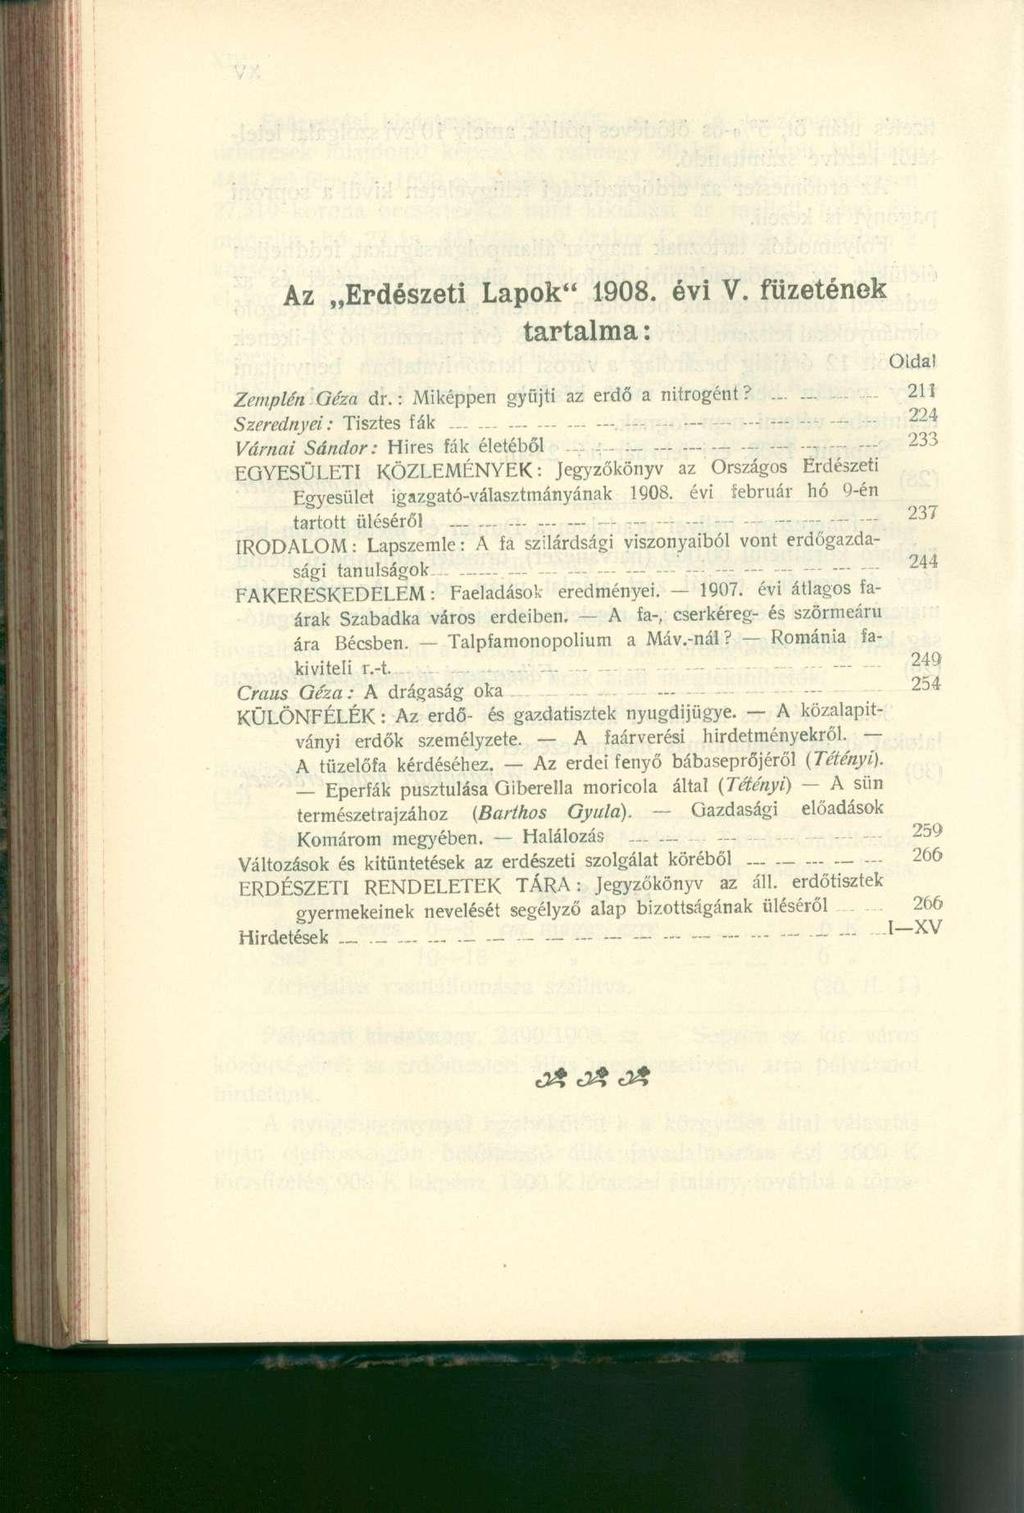 Az Erdészeti Lapok" 1908. évi V. füzetének tartalma: Oldal Zemplén Géza dr.: Miképpen gyűjti az erdő a nitrogént?......... 211 Szerednyei: Tisztes fák............... ~.